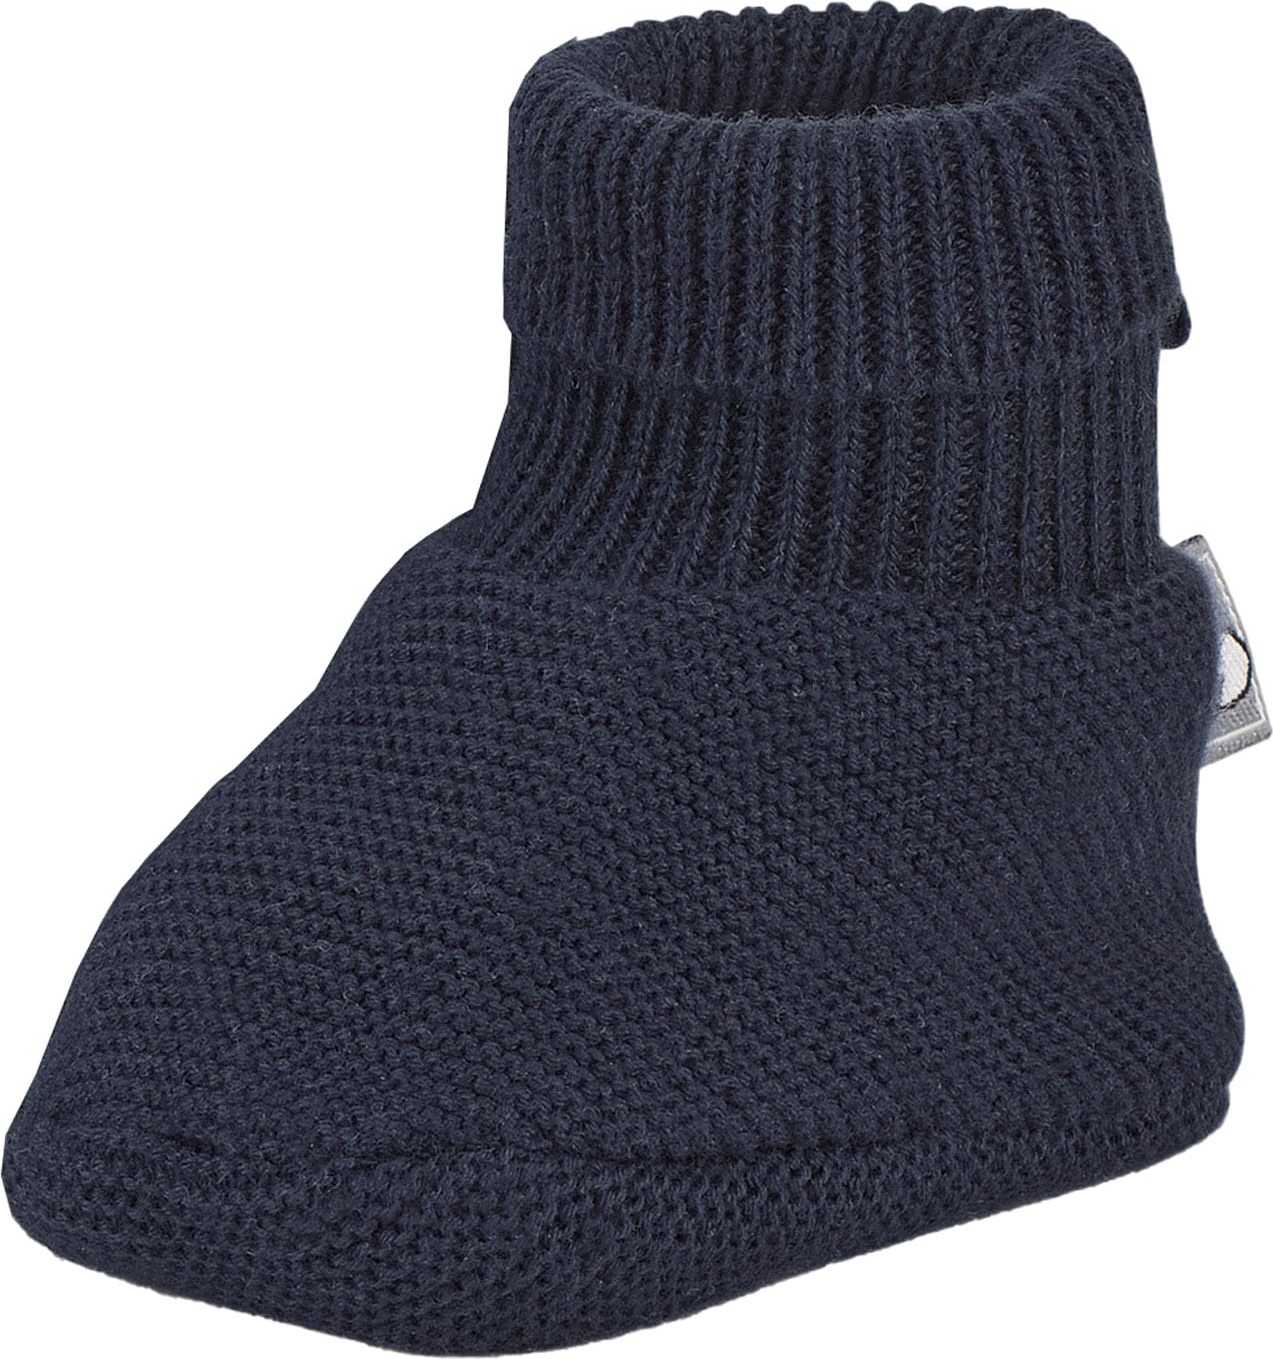 STERNTALER Ponožky ultramarínová modř